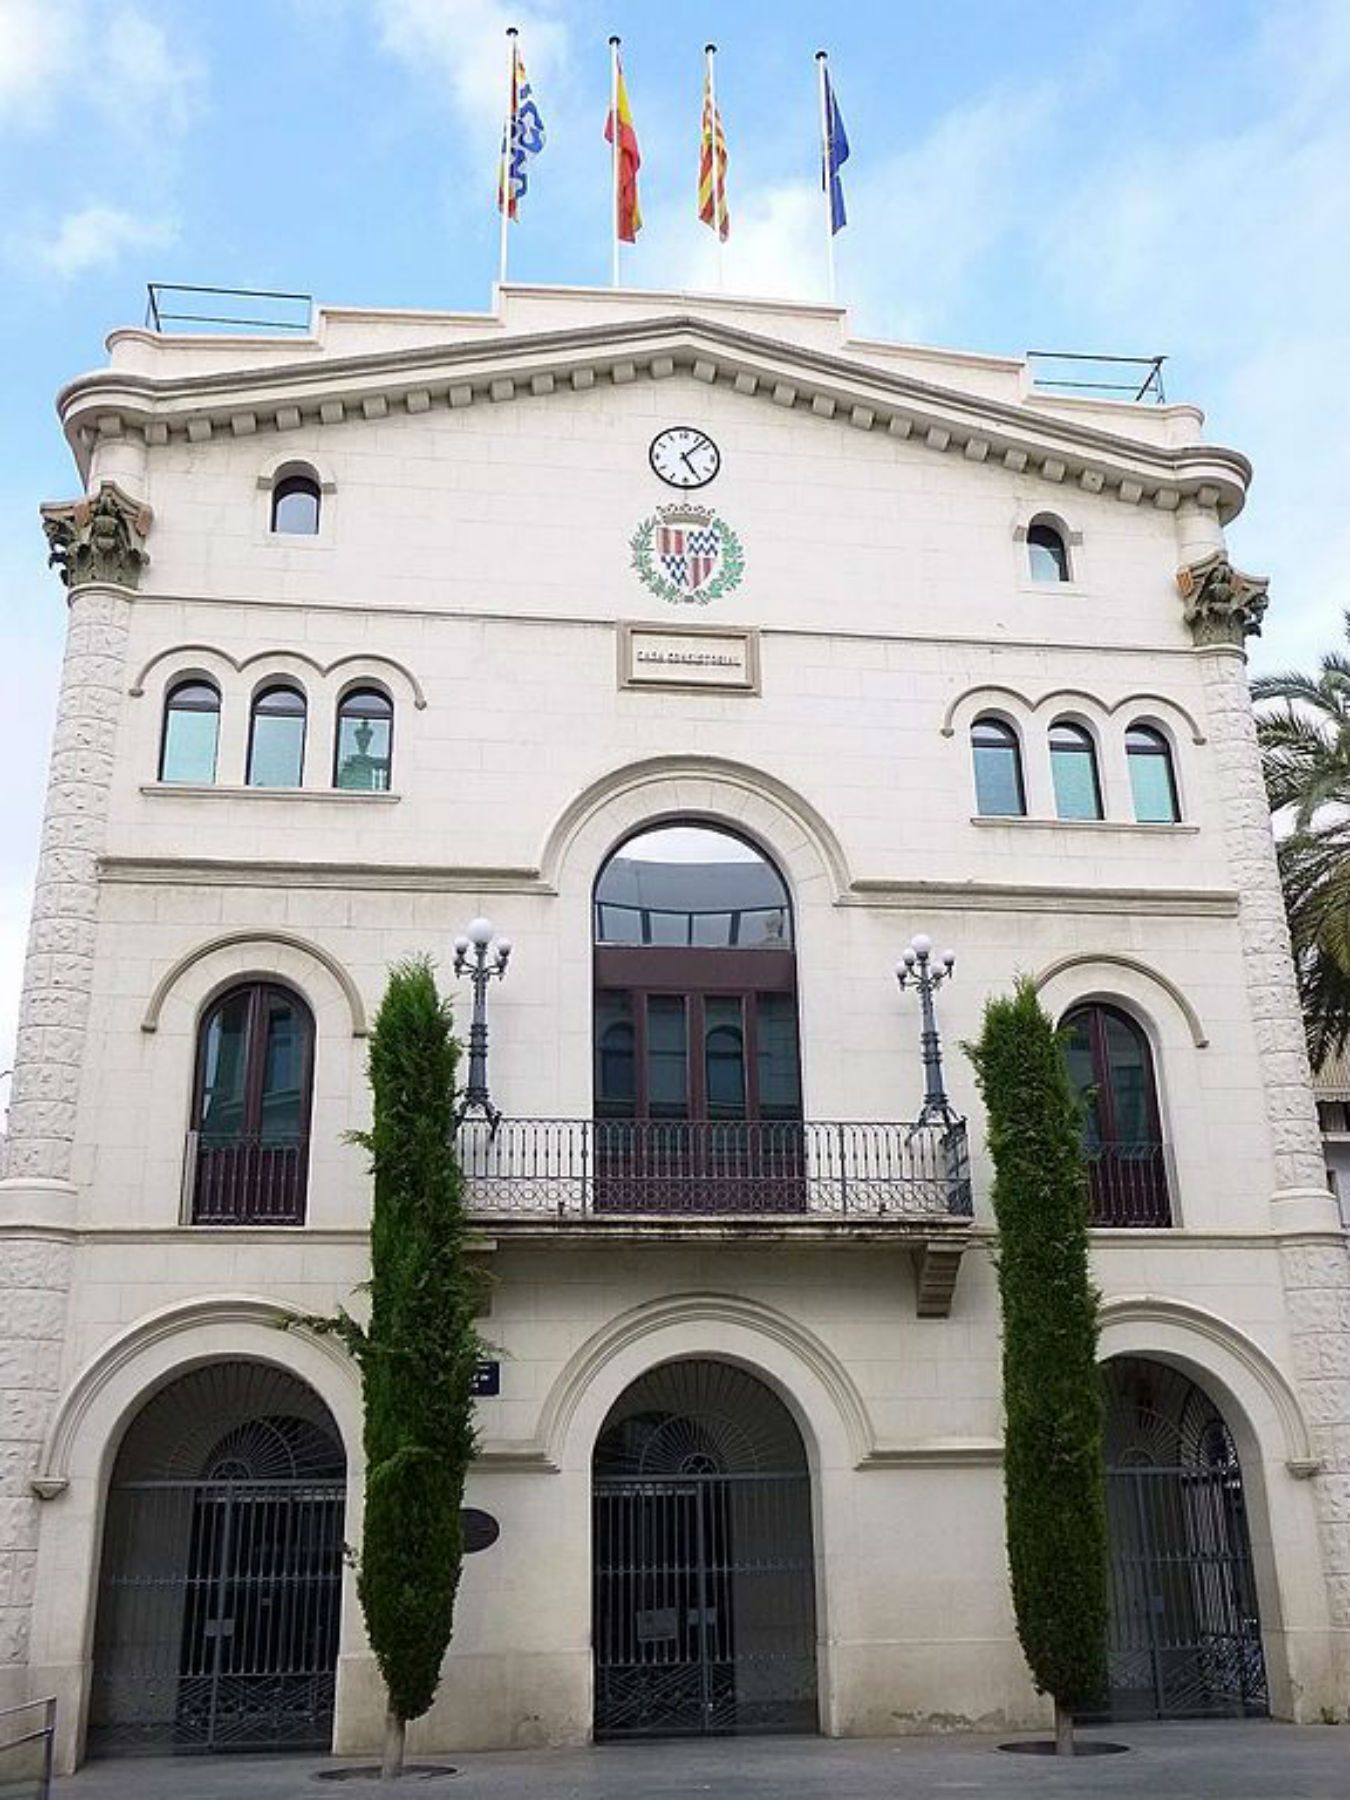 El juez decidirá hoy si el Ayuntamiento de Badalona puede abrir el 12-O